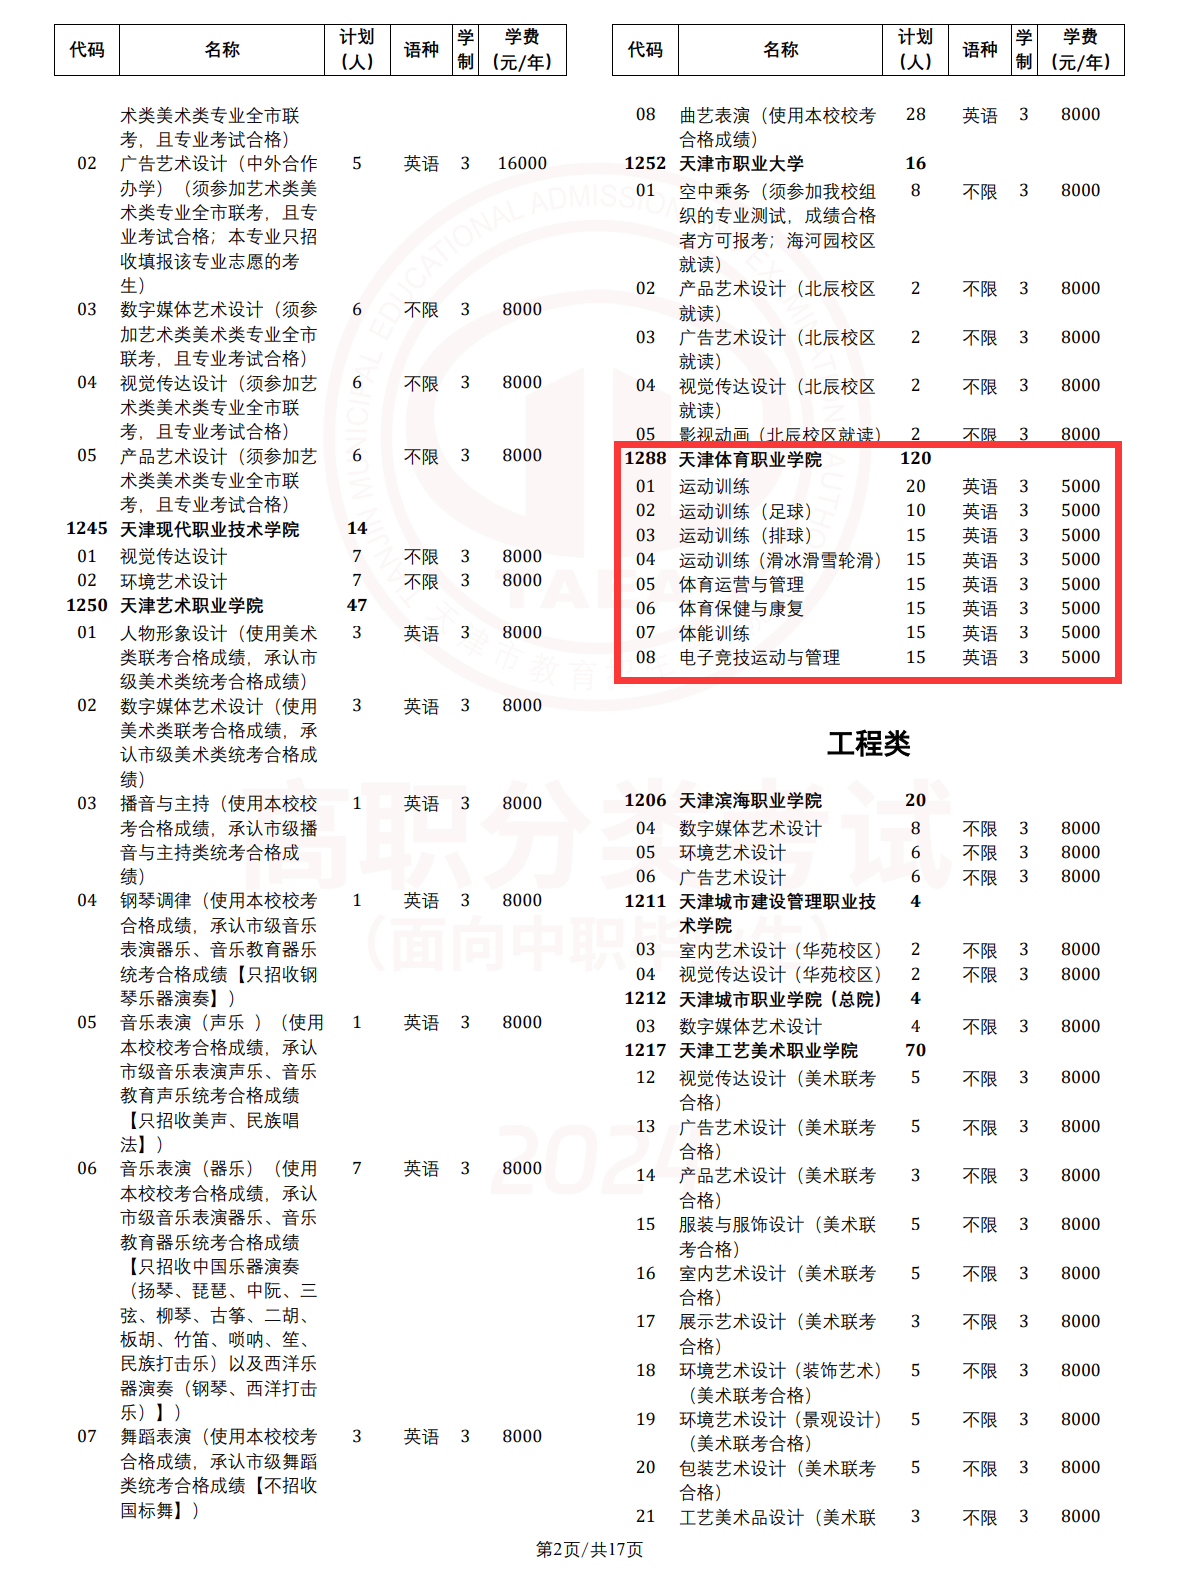 2024天津体育职业学院高职分类考试招生计划